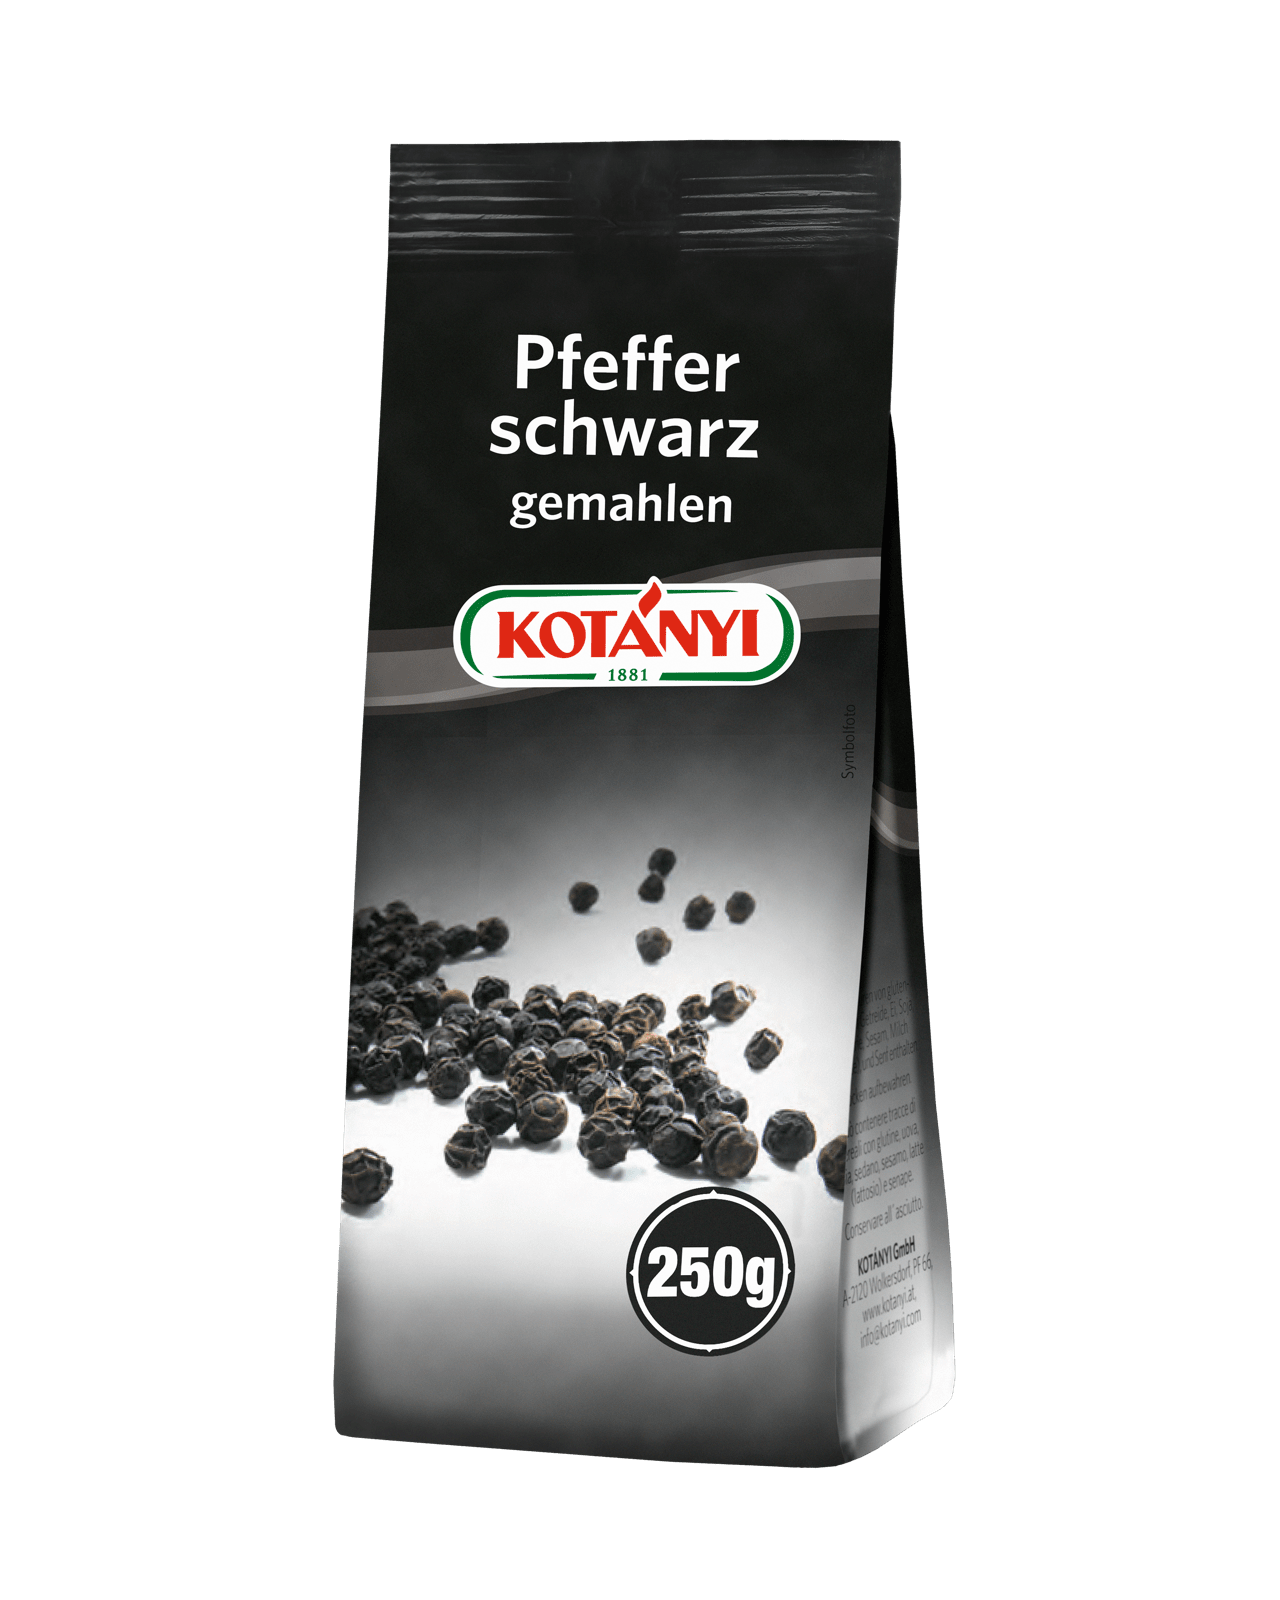 Kotányi schwarzer Pfeffer gemahlen in 250g Aromaschutzpackung